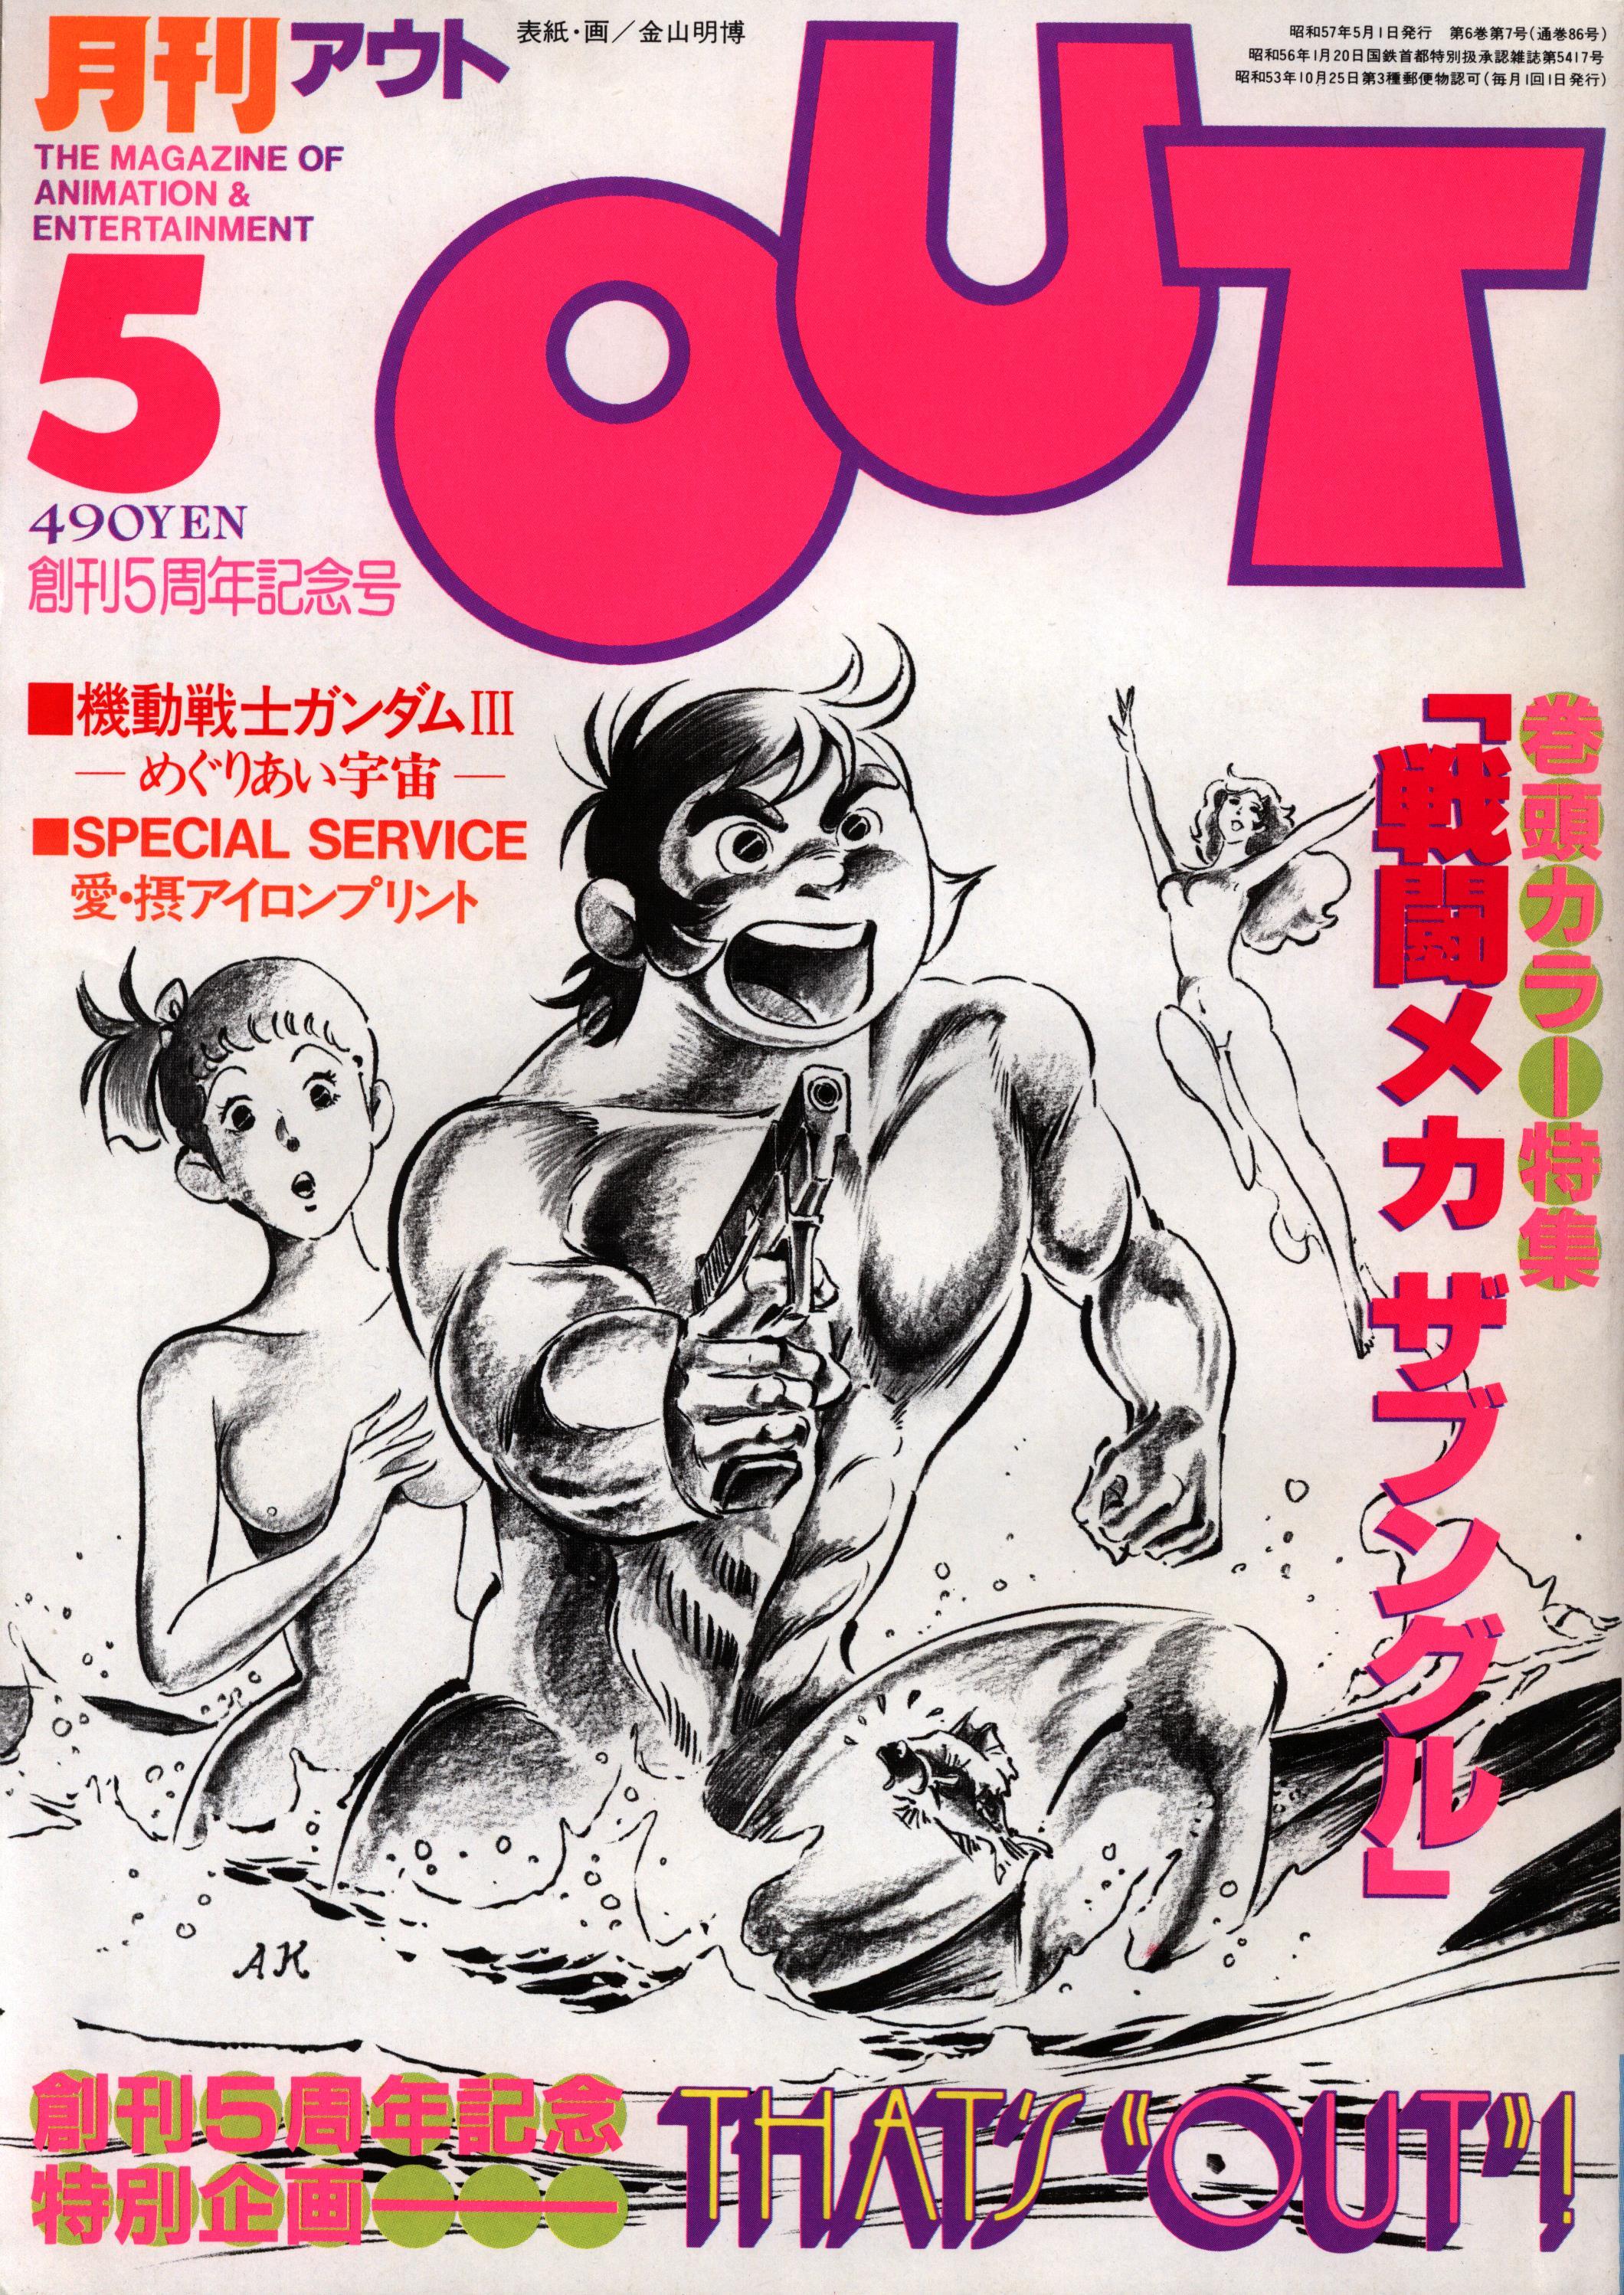 中古アニメ雑誌 月刊 OUT 1985年7月号